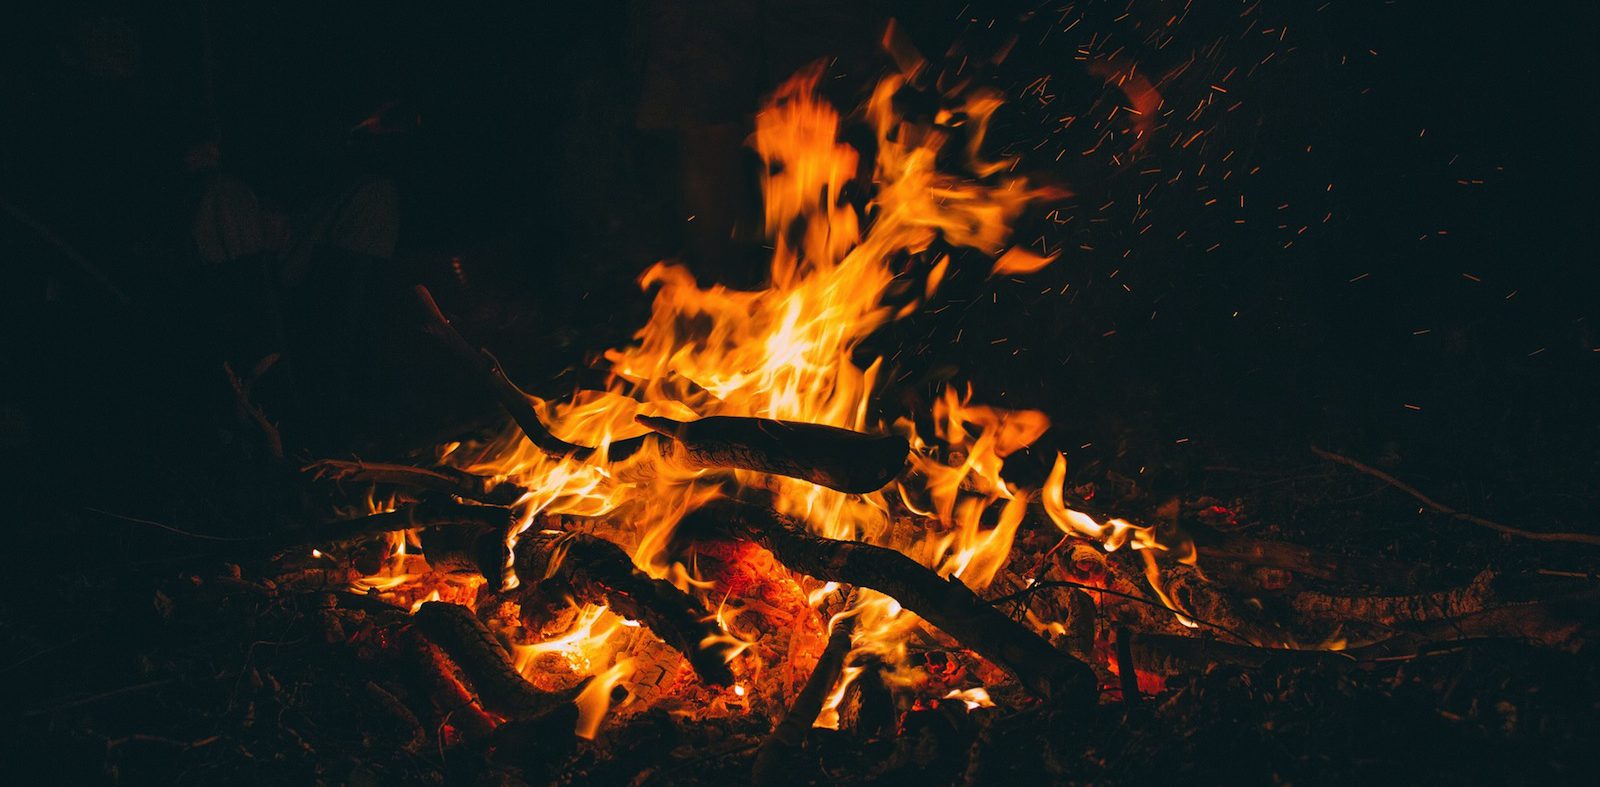 How to enjoy a bonfire safely